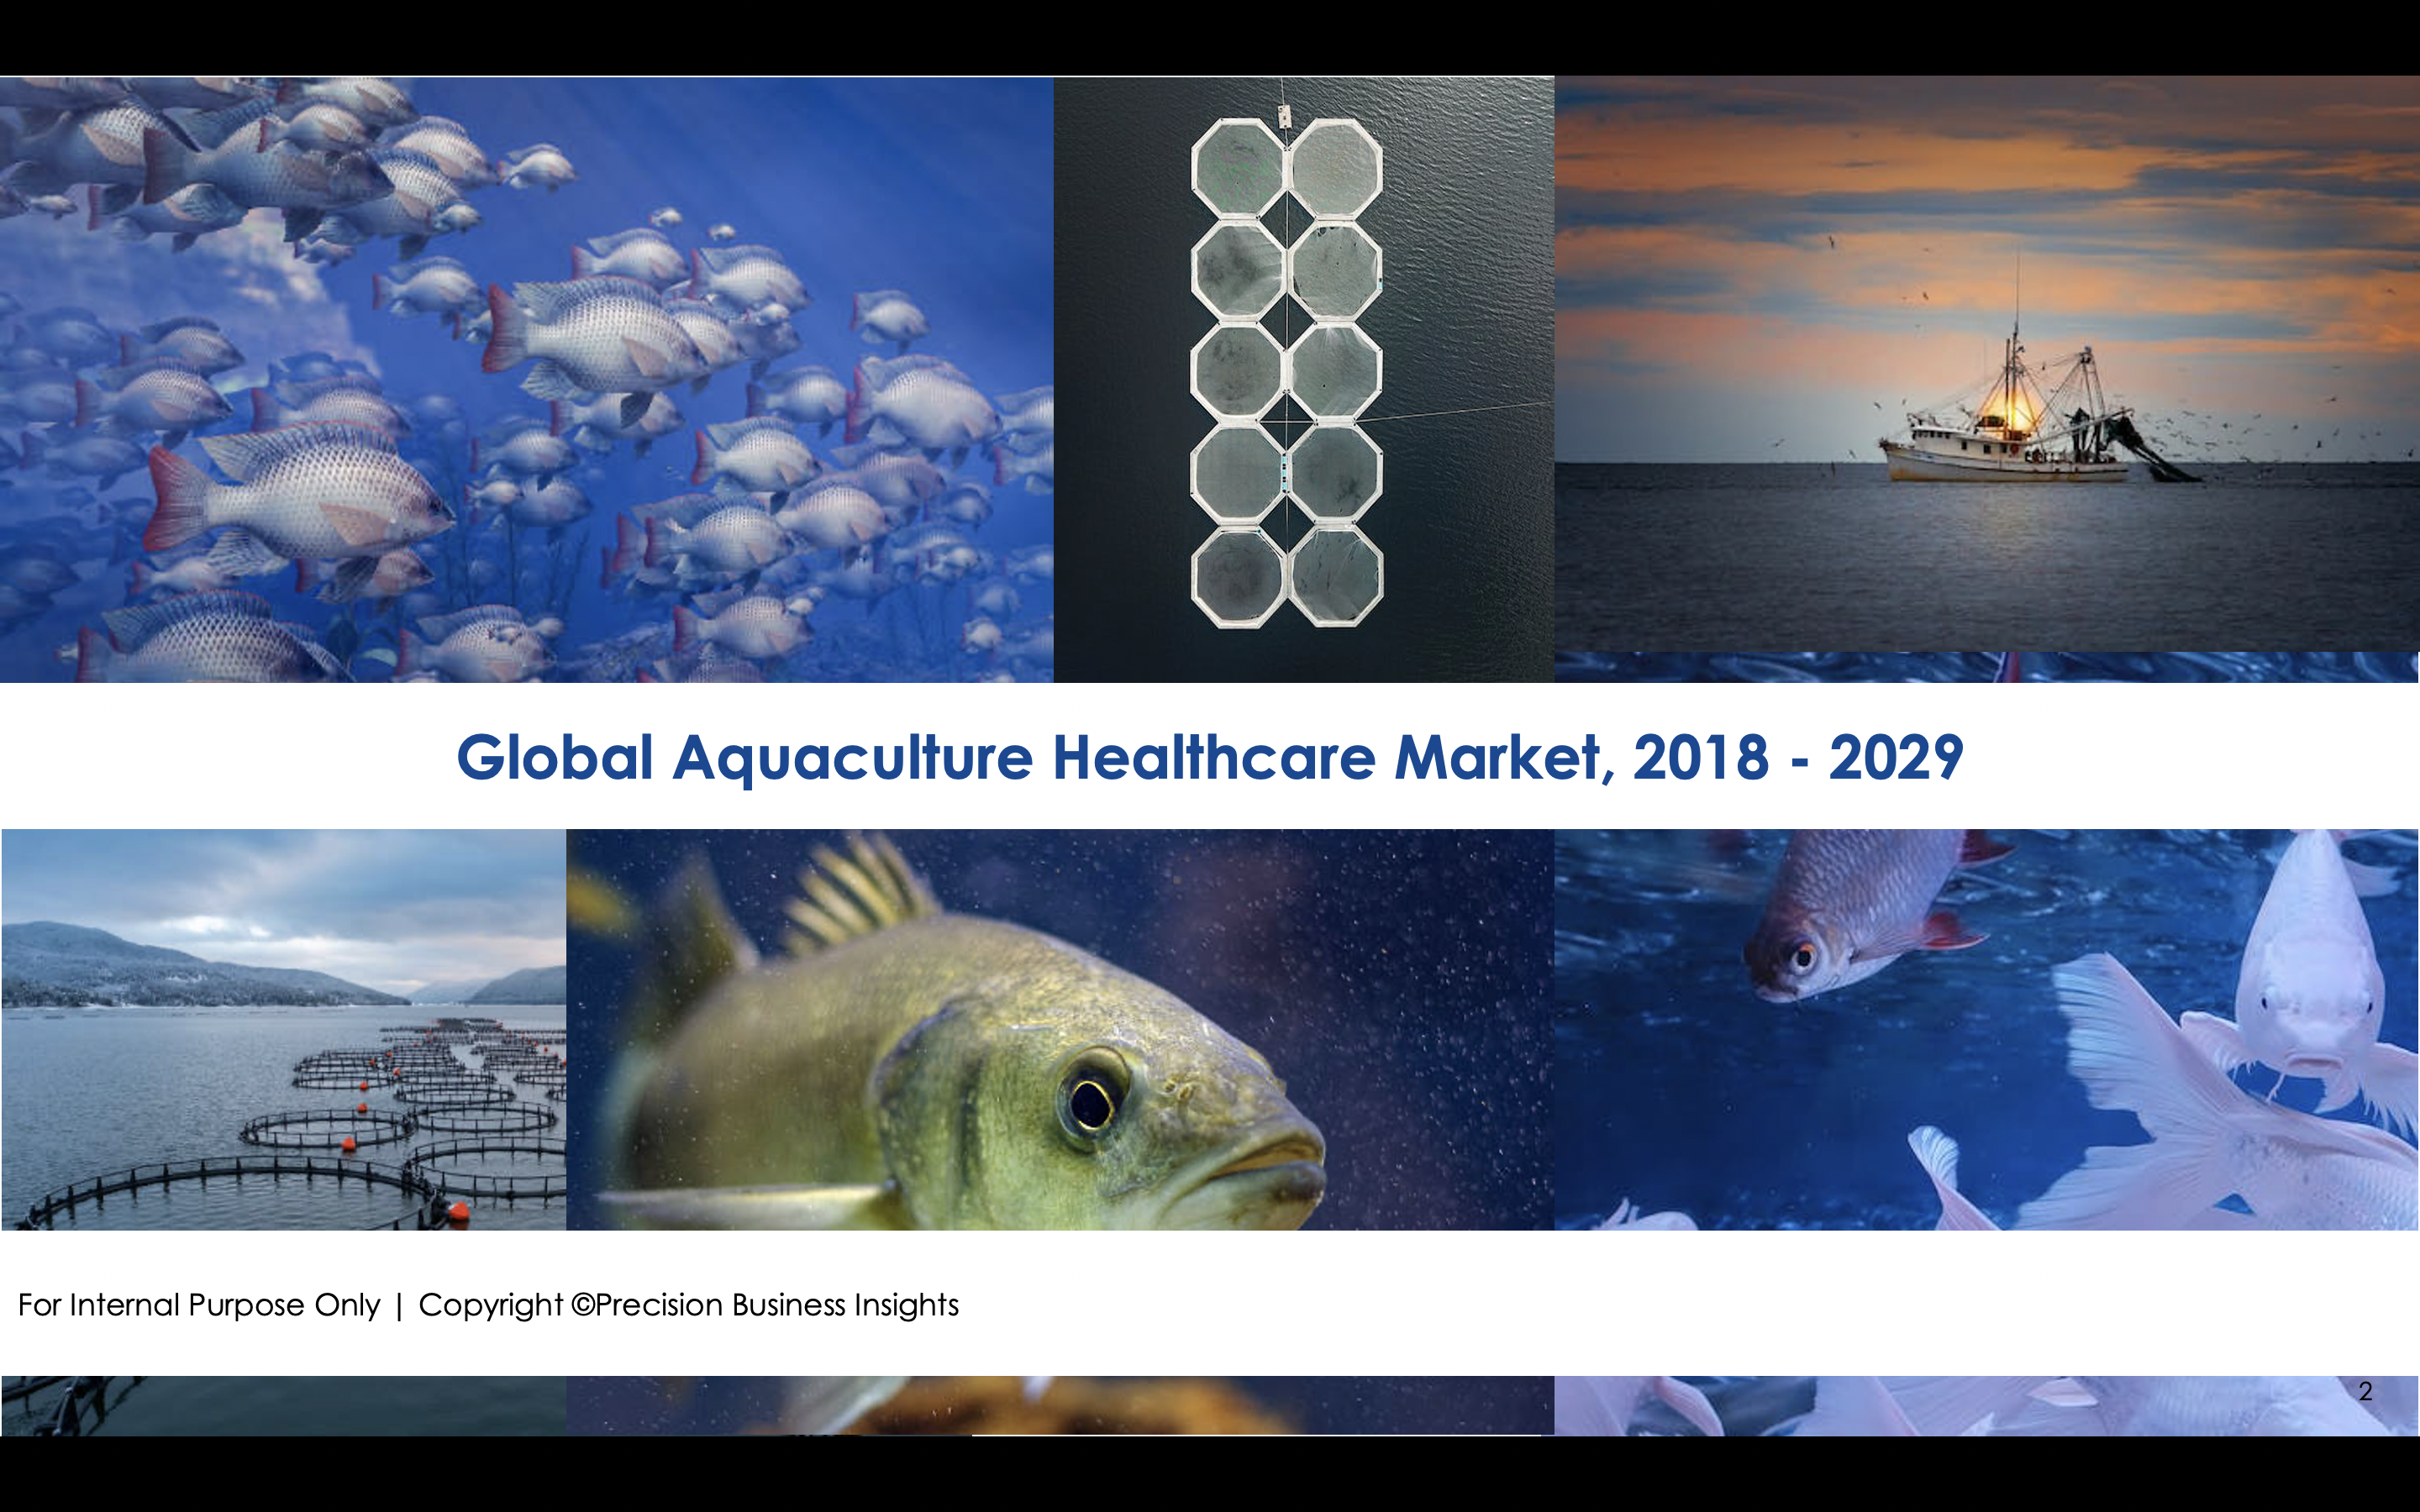 Aquaculture Healthcare Market